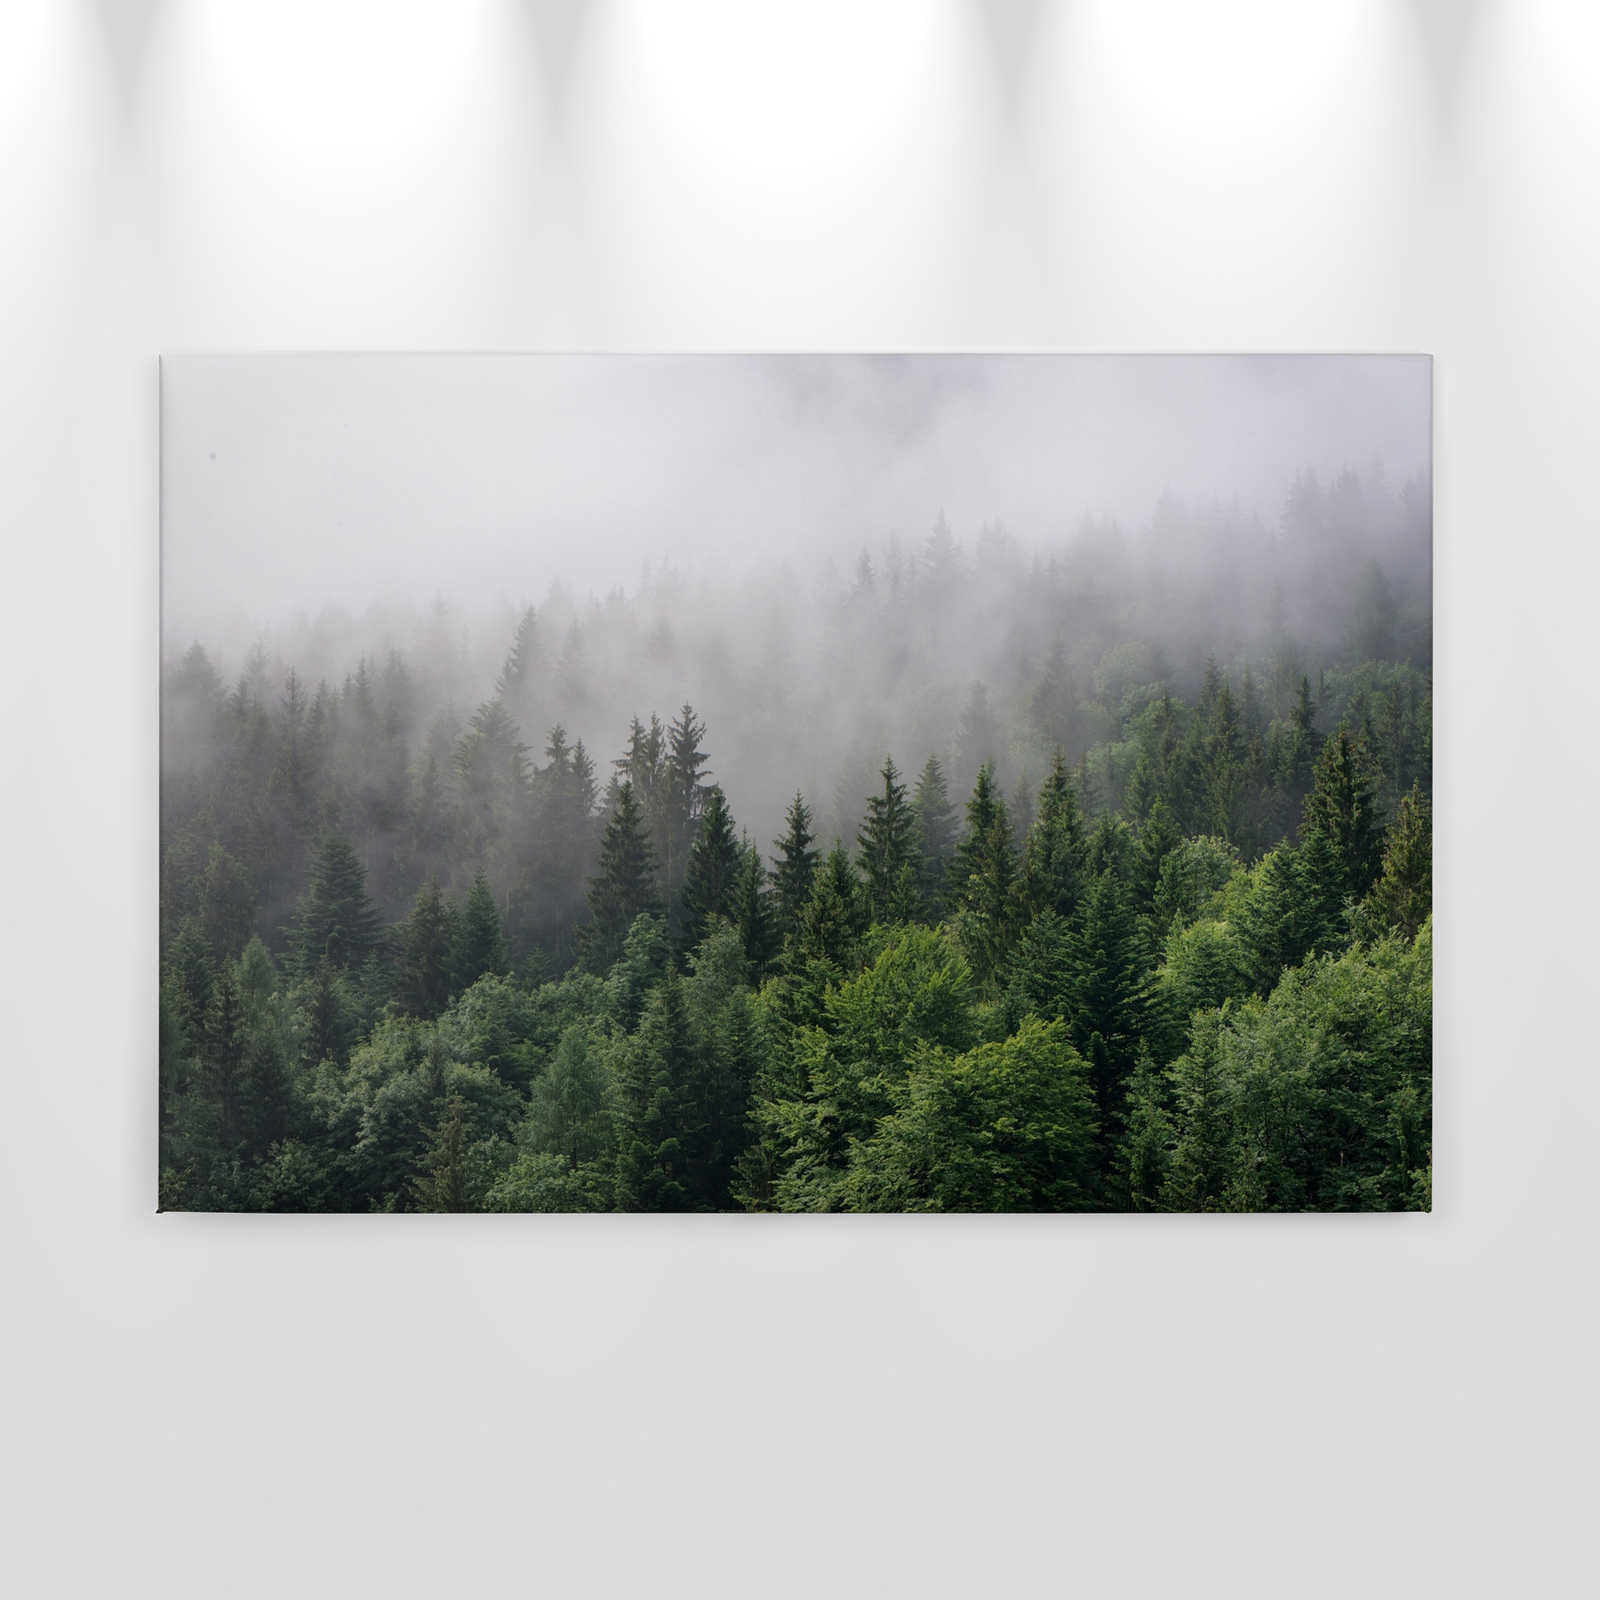             Leinwand mit Wald von oben an einem nebeligen Tag – 0,90 m x 0,60 m
        